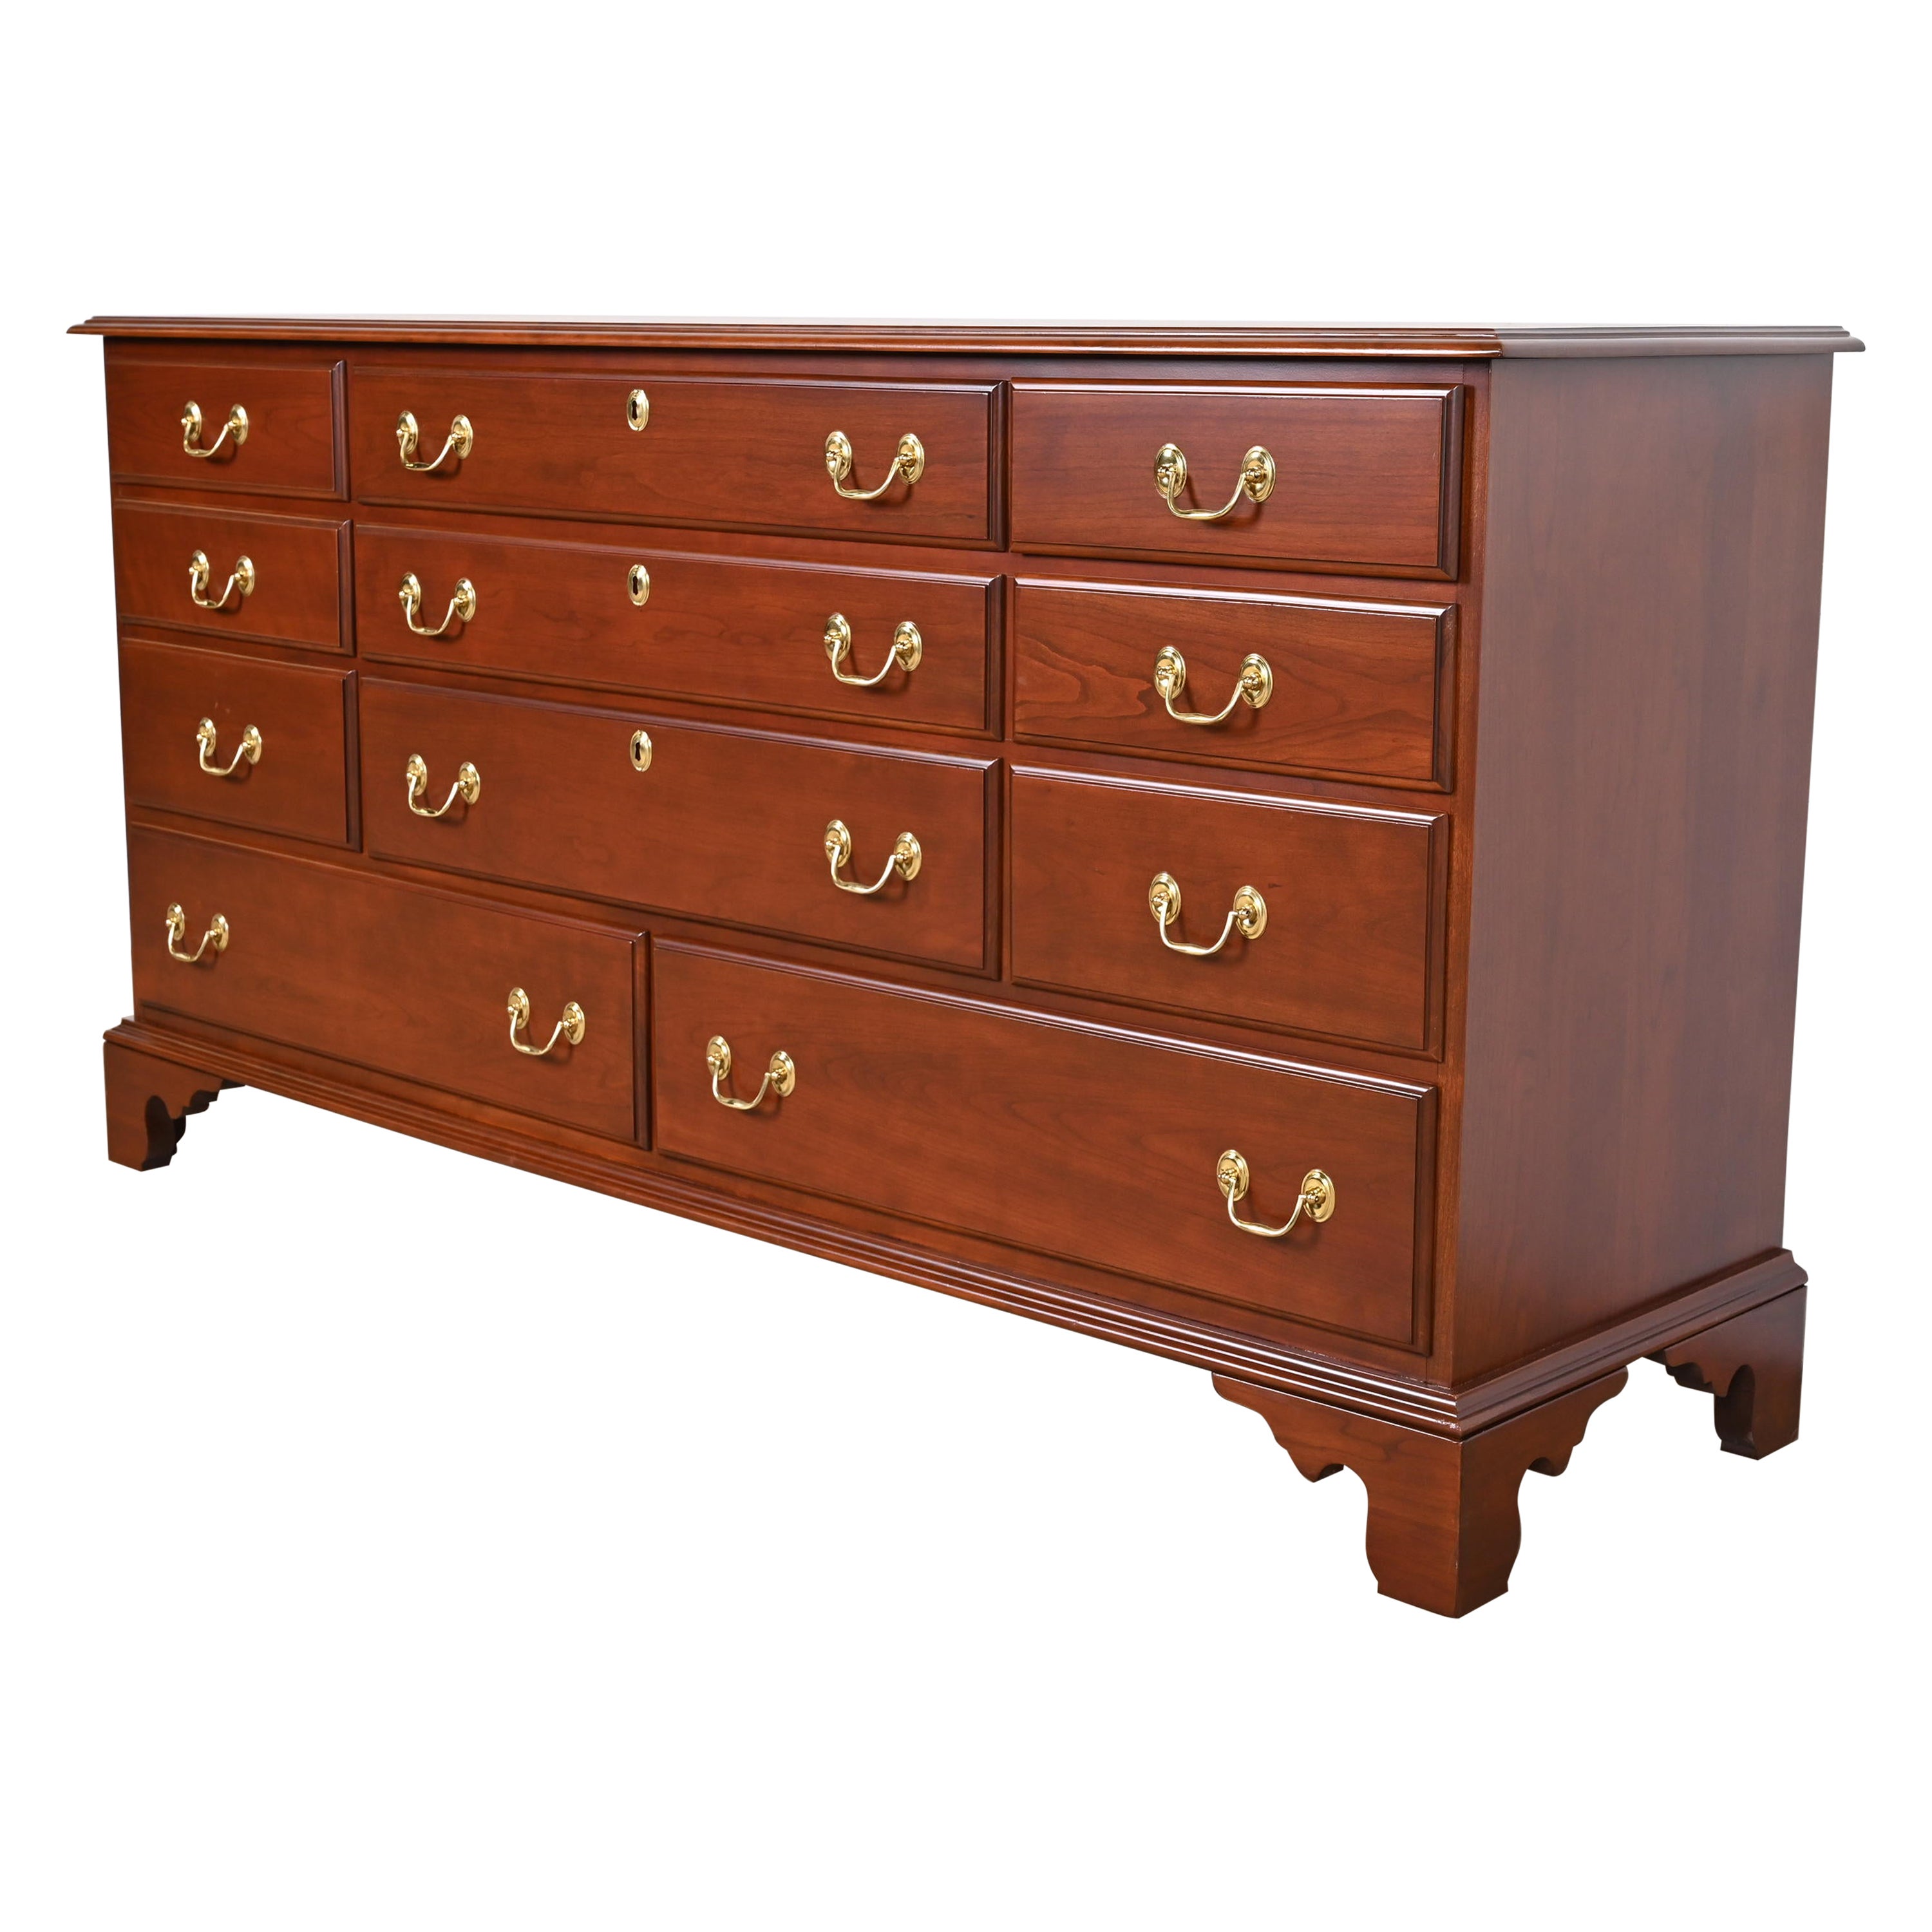 Harden Furniture Georgian Cherry Wood Eleven-Drawer Dresser, Newly Restored